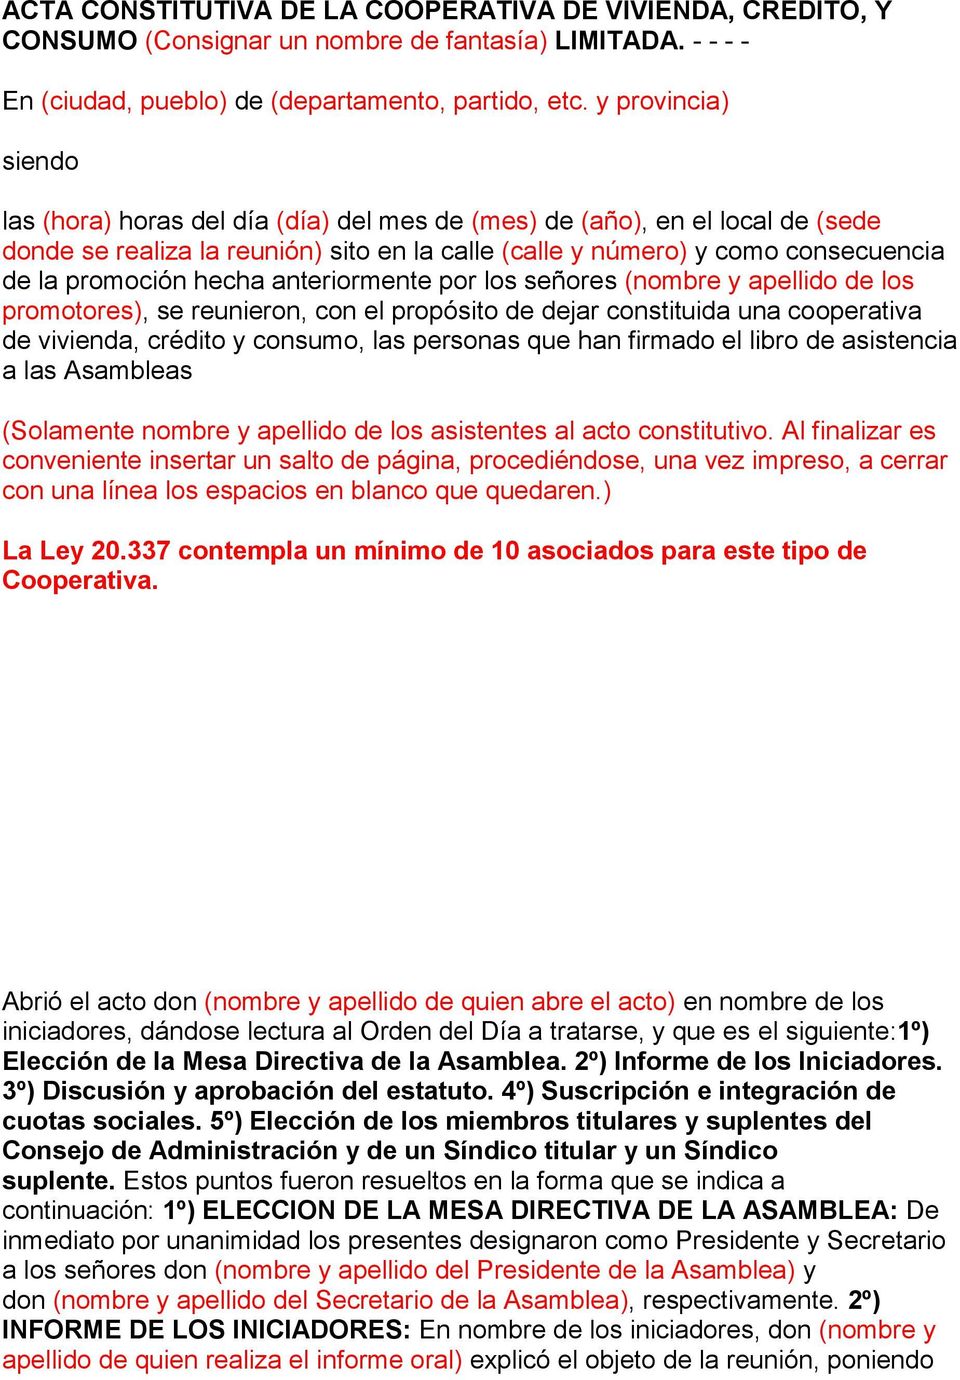 ACTA CONSTITUTIVA DE LA COOPERATIVA DE VIVIENDA, CREDITO, Y CONSUMO  (Consignar un nombre de fantasía) LIMITADA - PDF Free Download